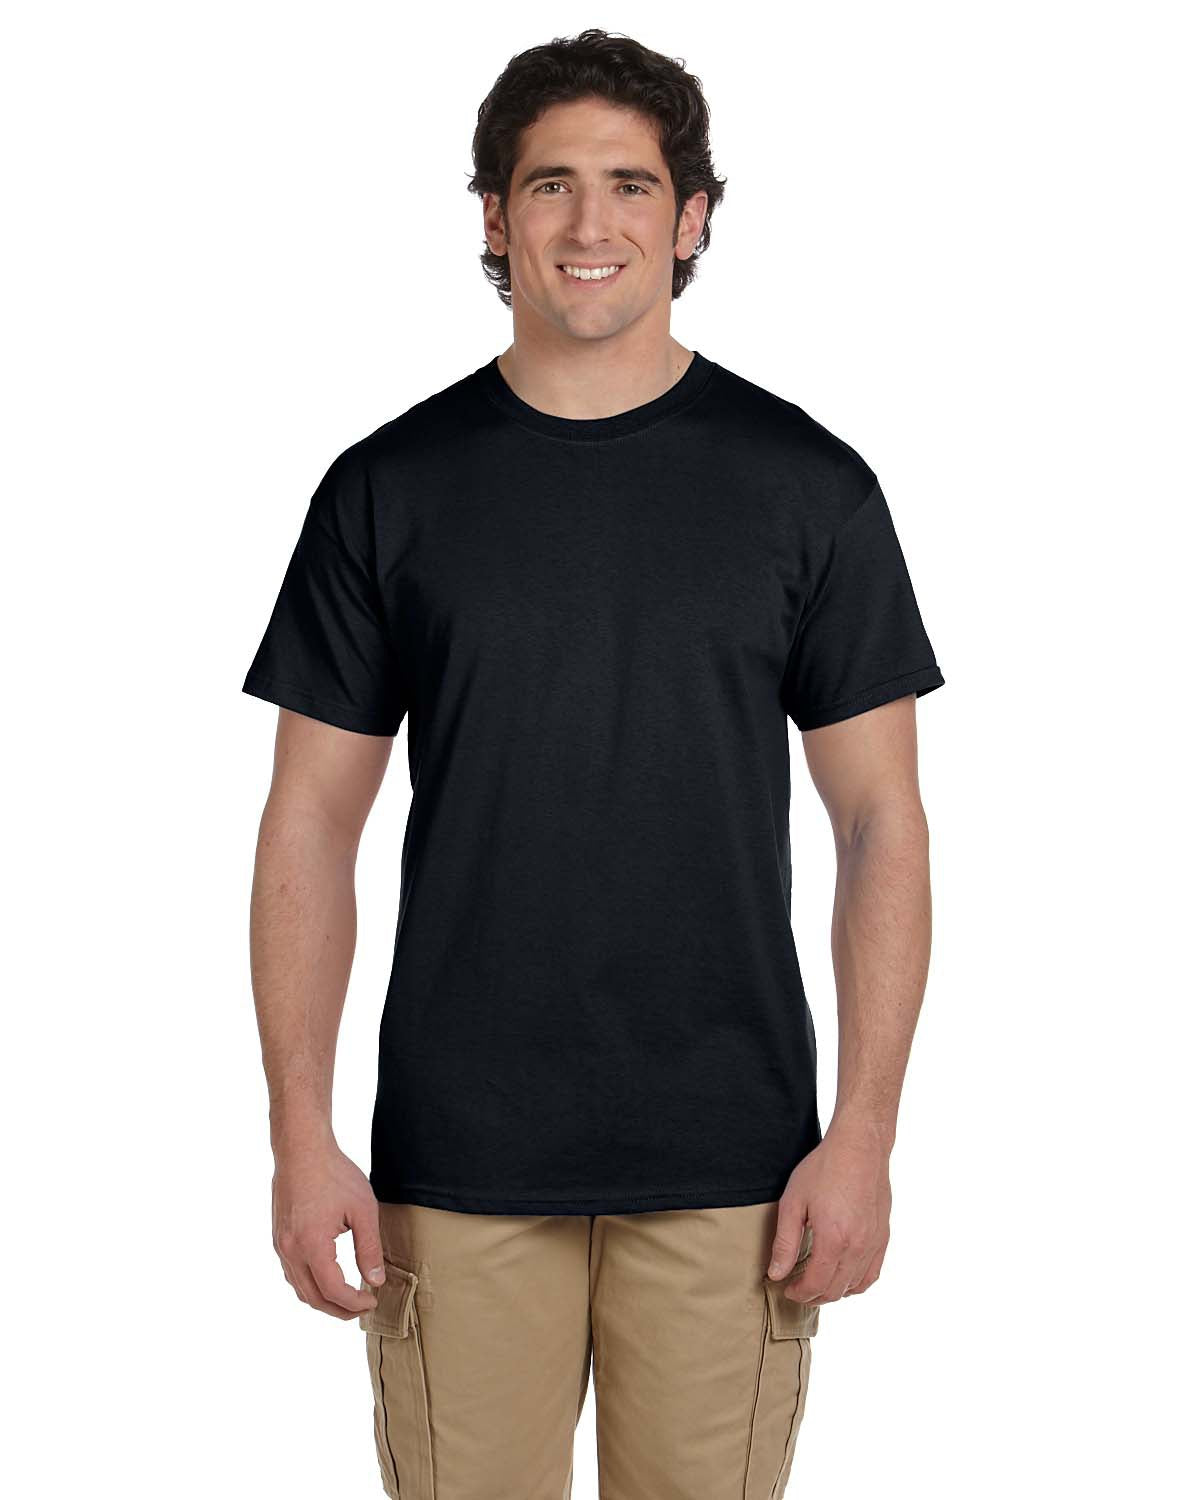 Monogrammed BC Pocket Tee Shirt - 2020